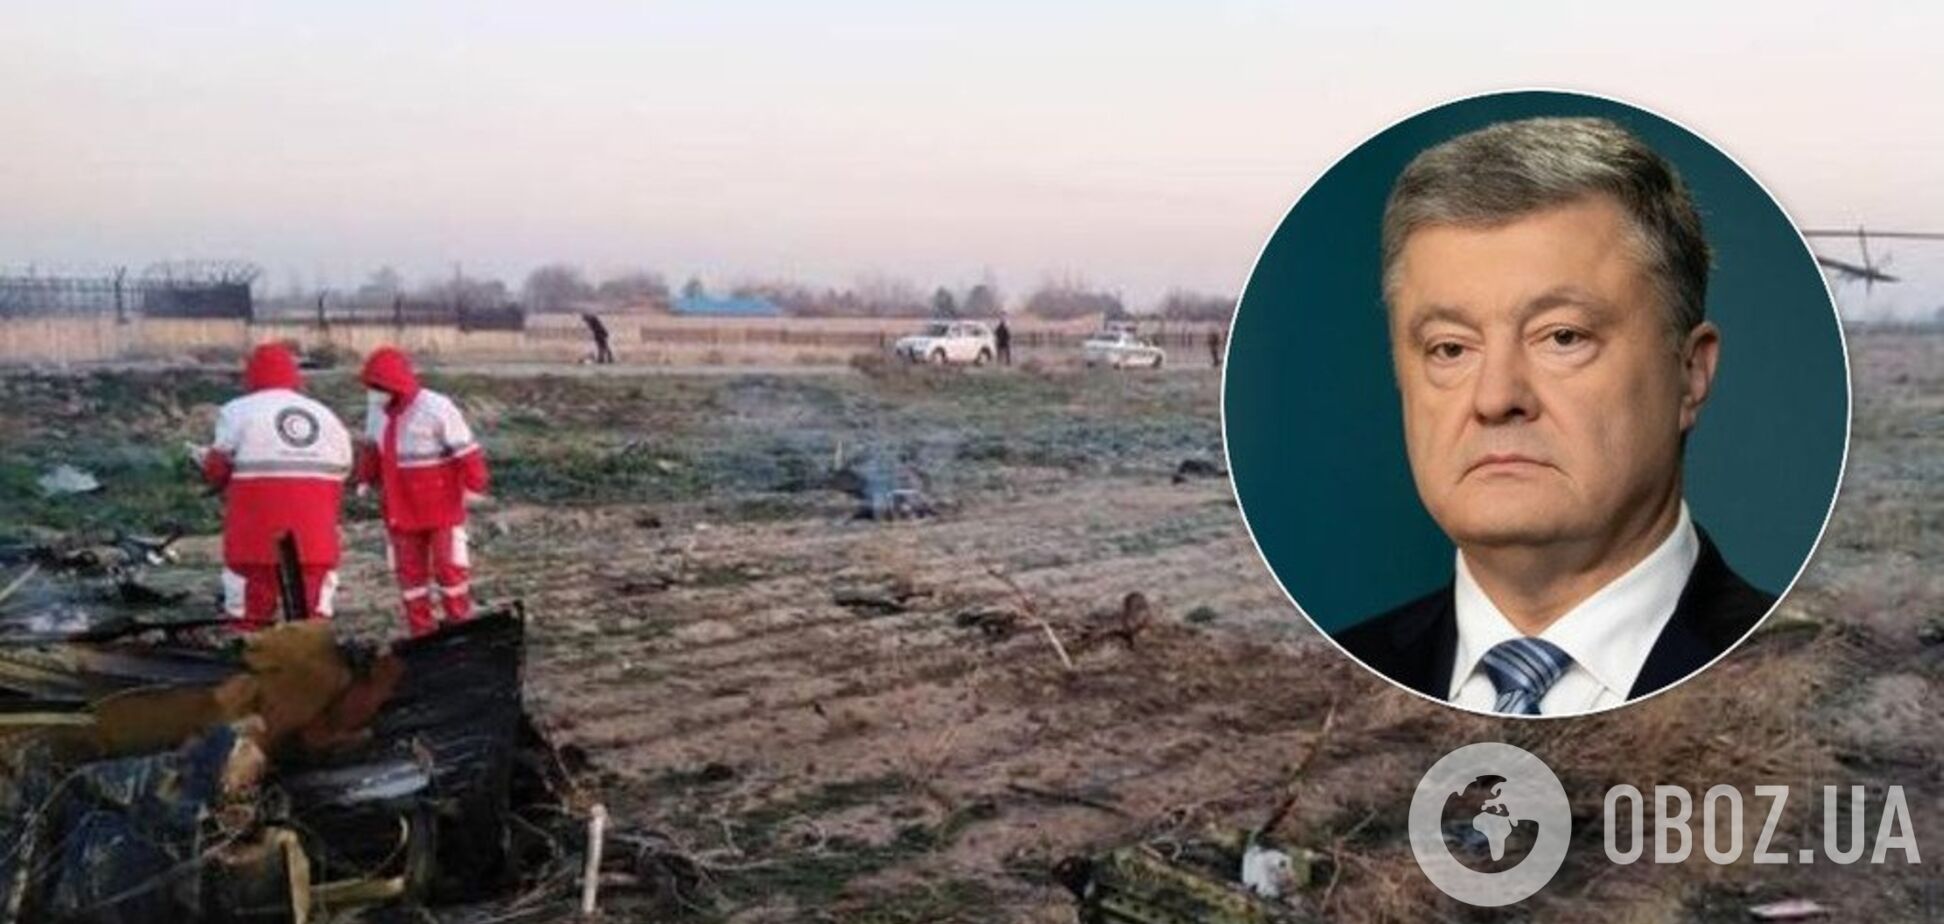 'Немає більшого горя, як втрачати близьких!' Порошенко відреагував на трагедію з літаком МАУ в Ірані